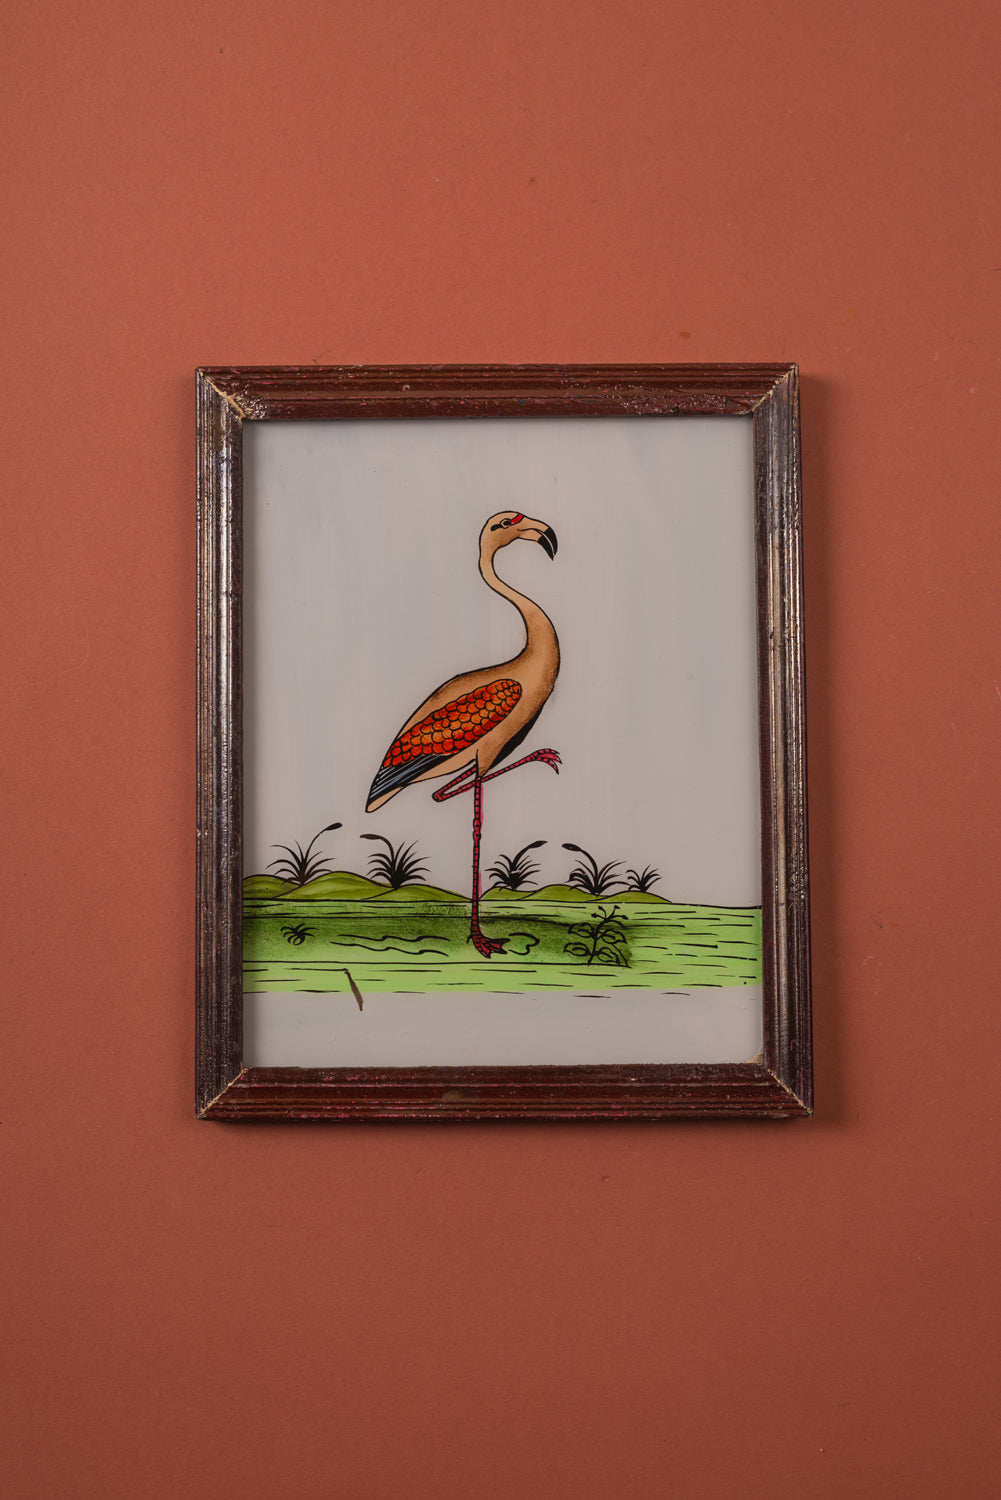 Medium Old Wood Frame with Botanical/Wildlife Painting - 585